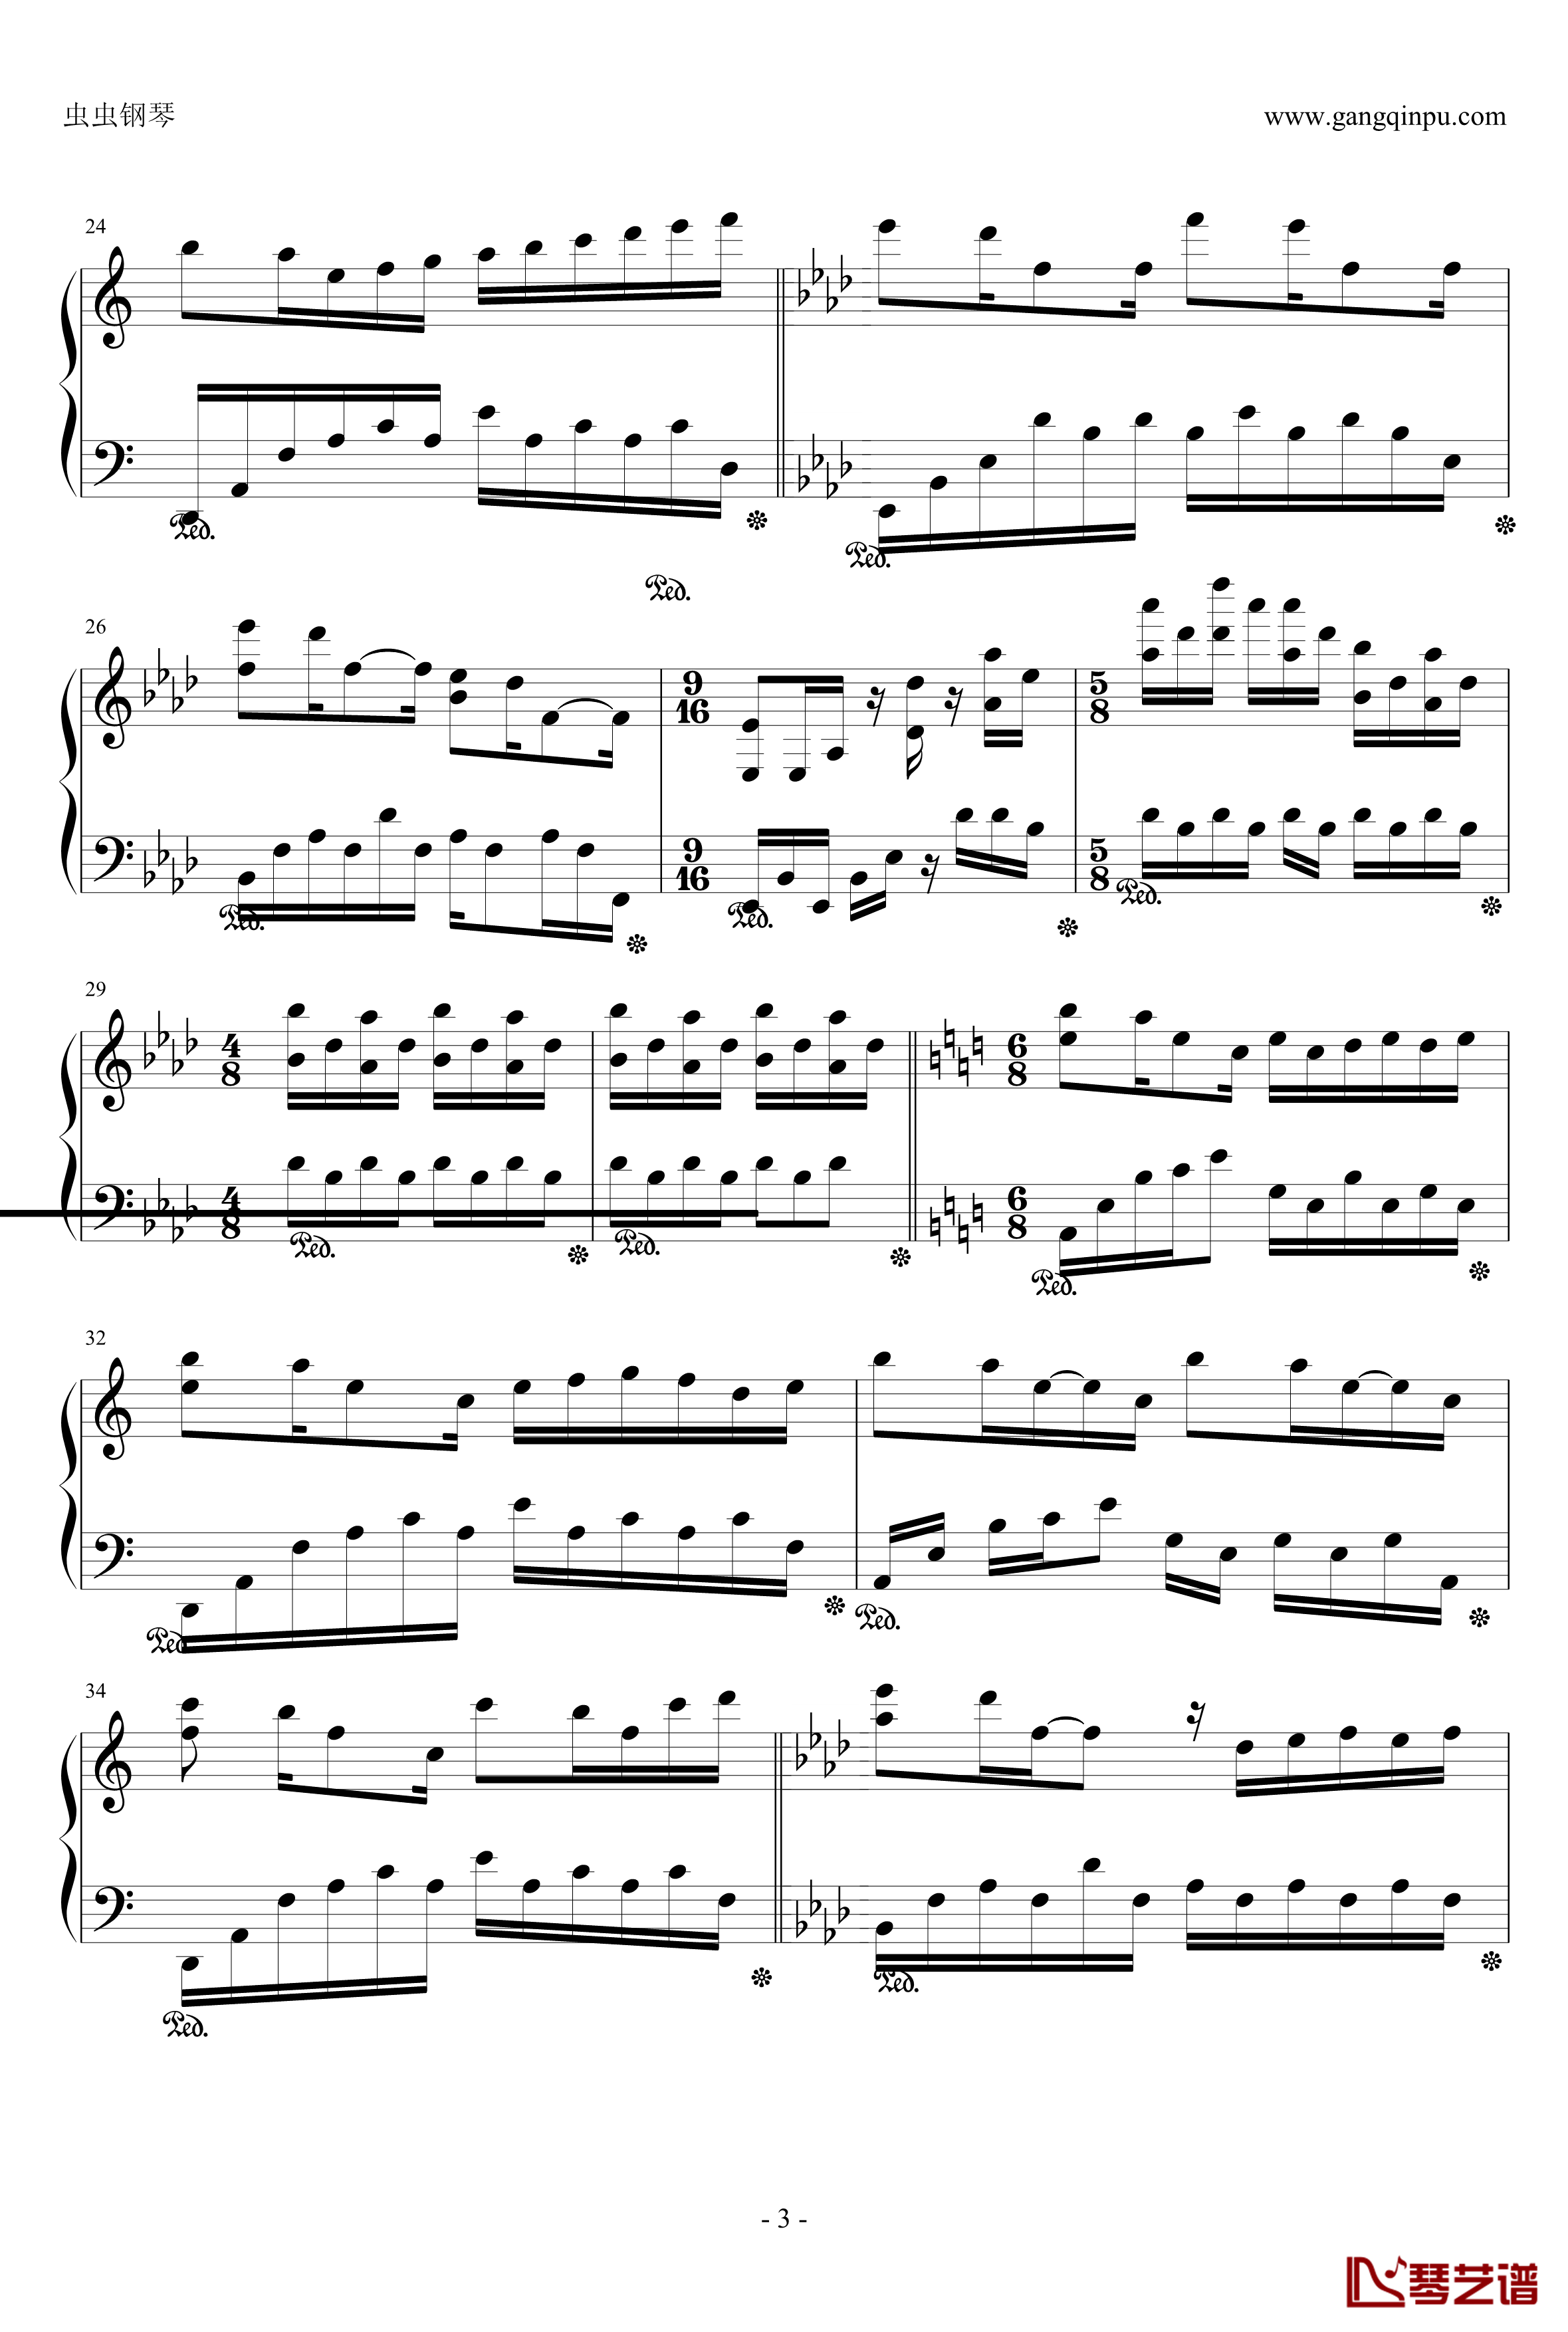 前声音钢琴谱-Yiruma